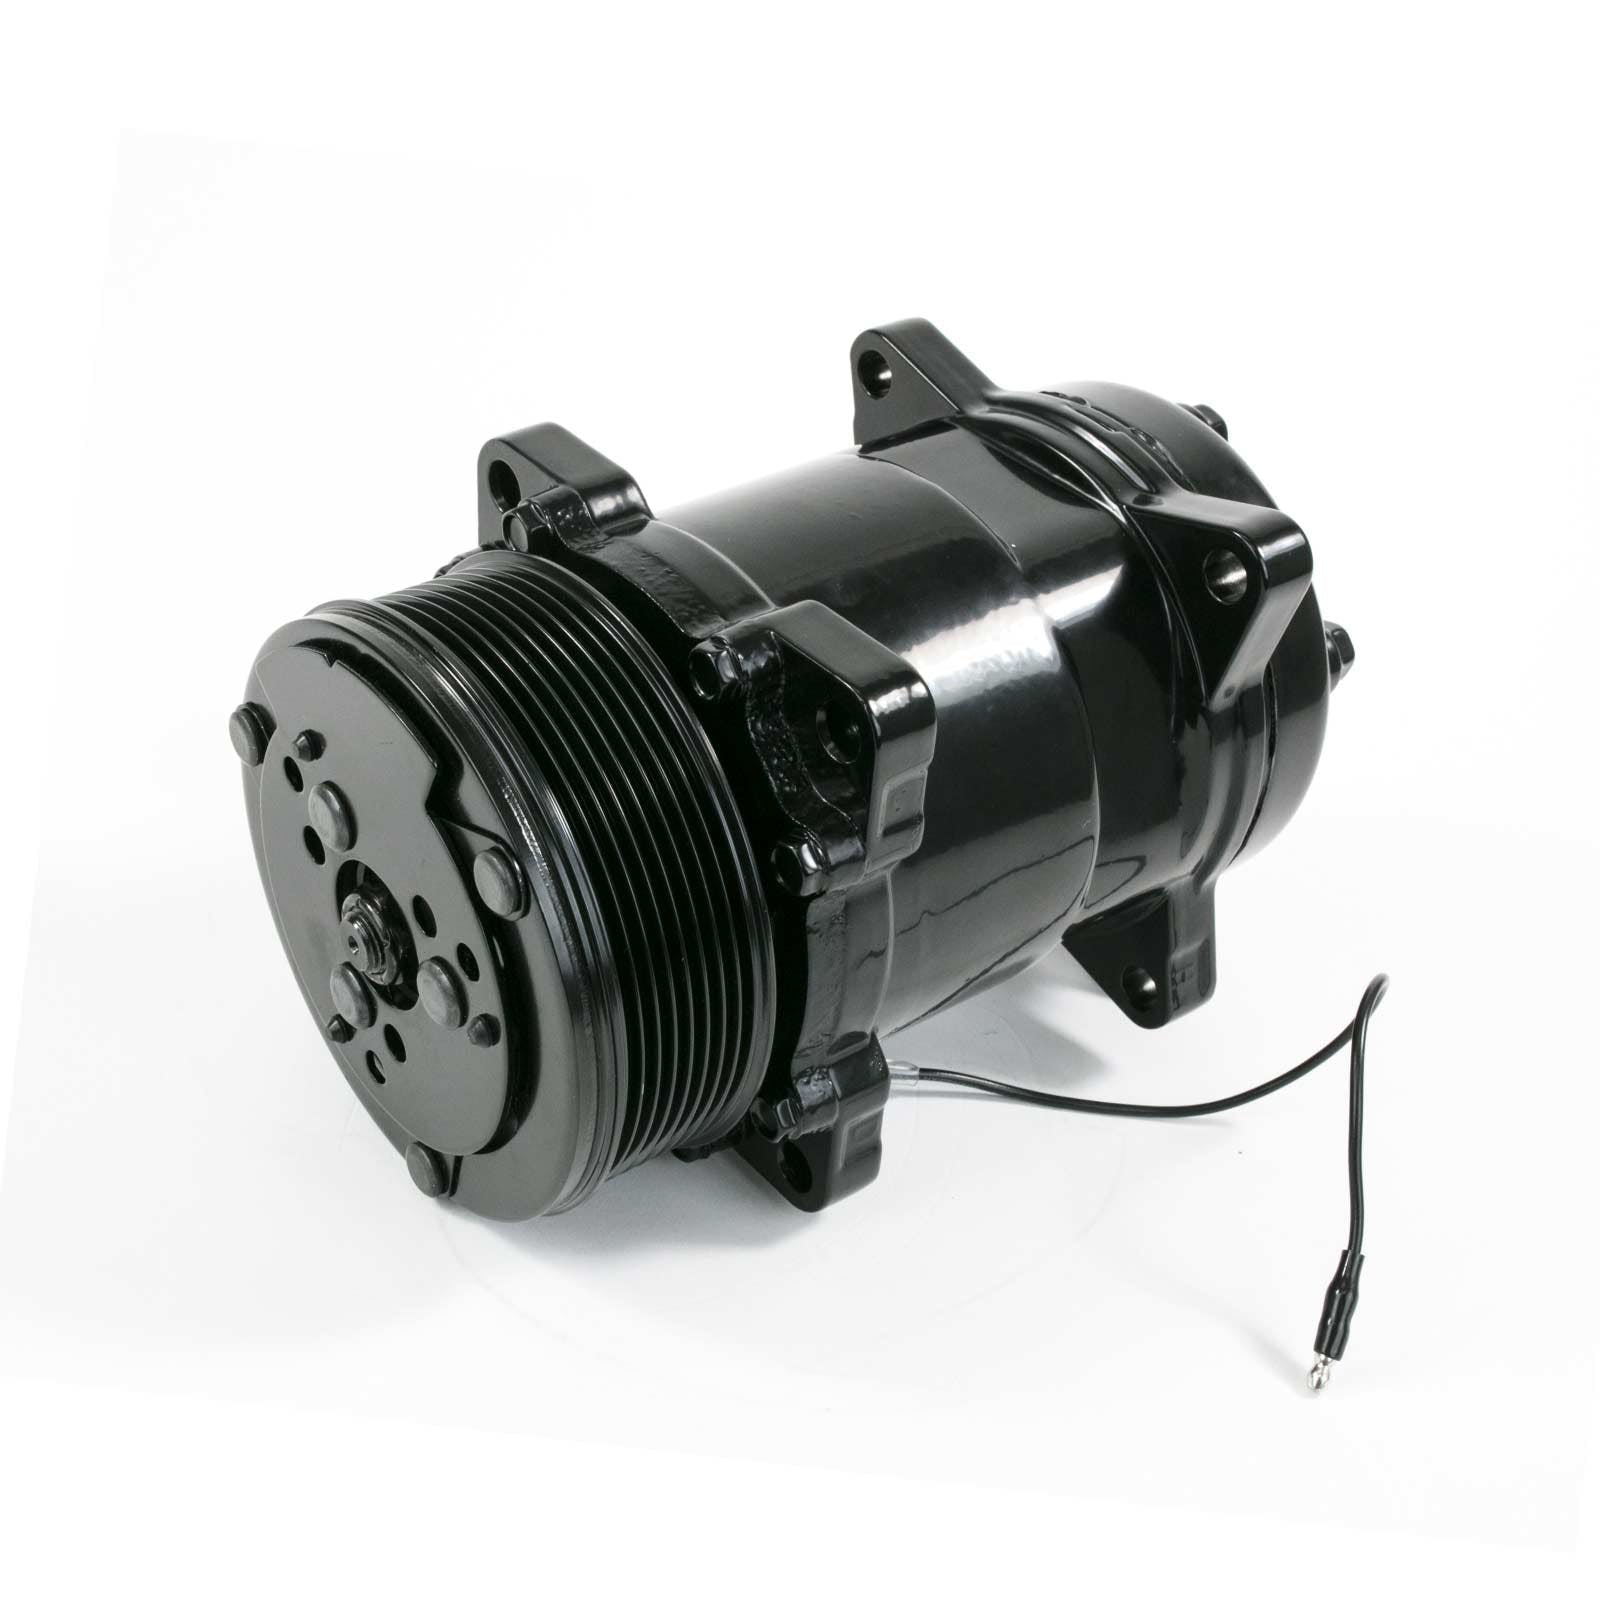 Top Street Performance HC5002BK A/C Compressor, Serpentine, Sanden 508 Style, Black